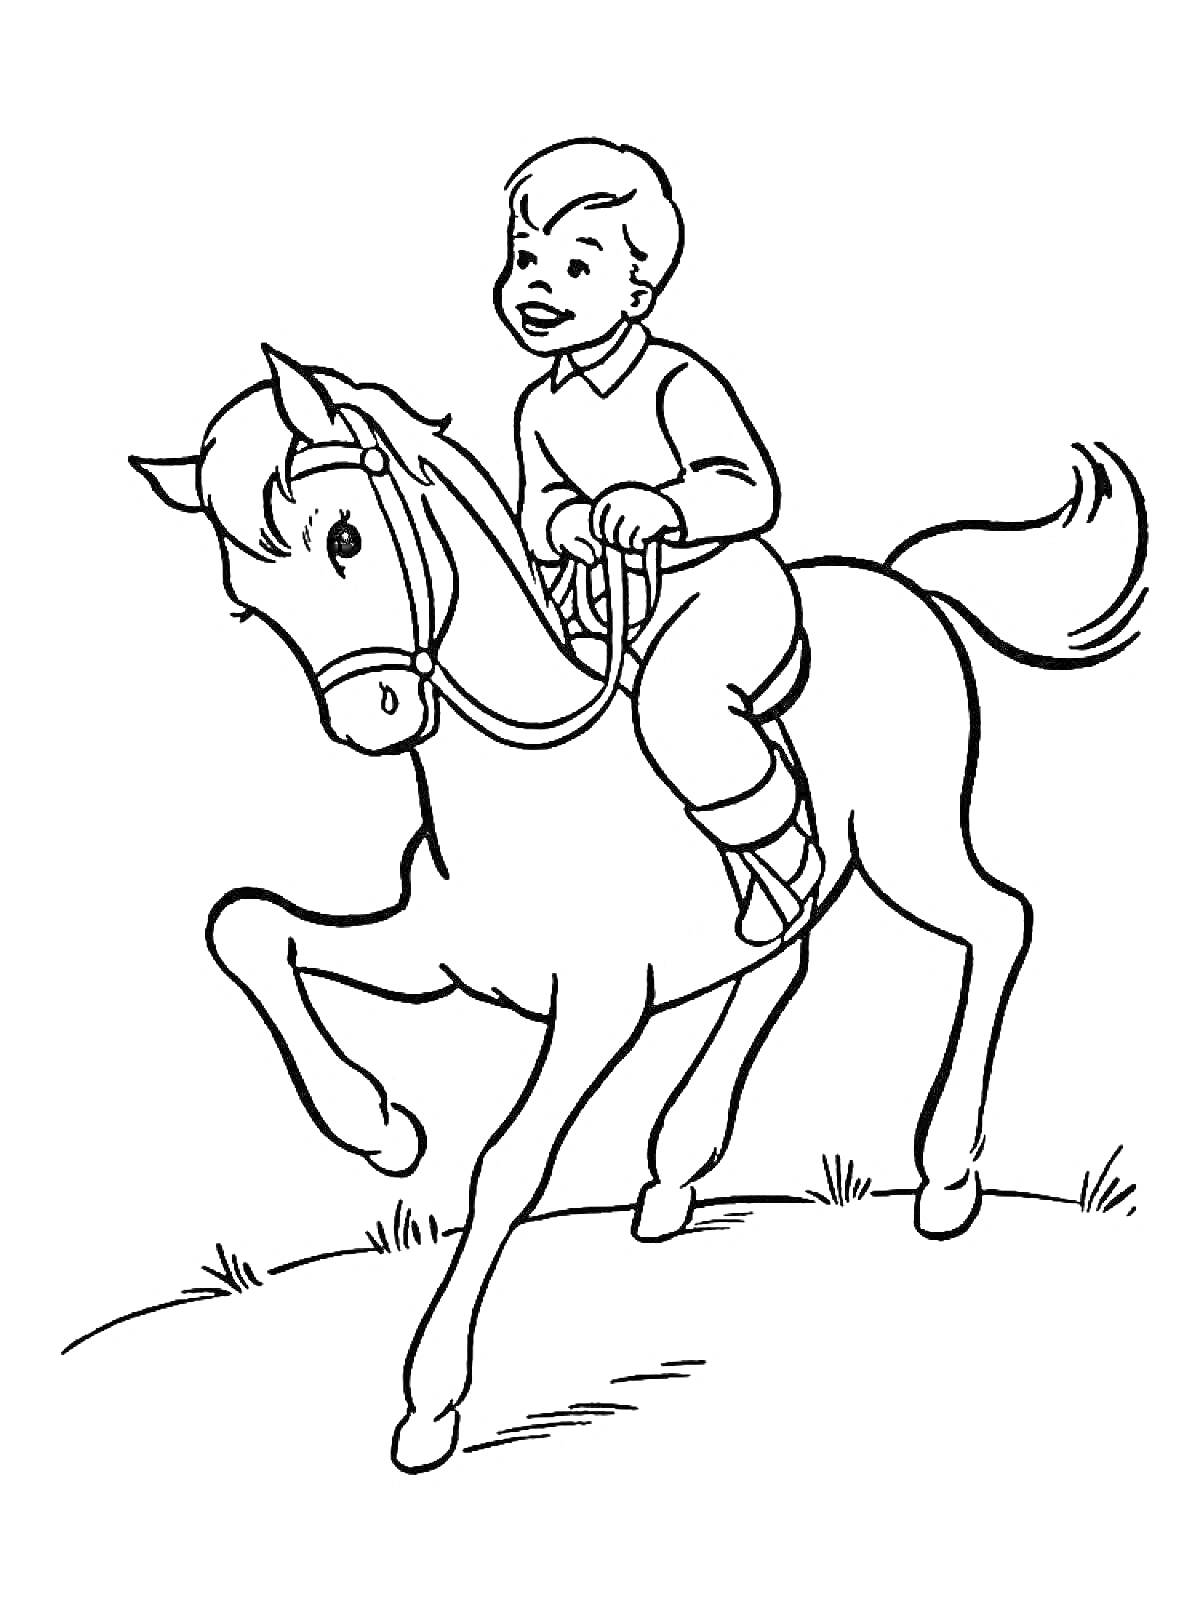 Мальчик верхом на лошади на холме